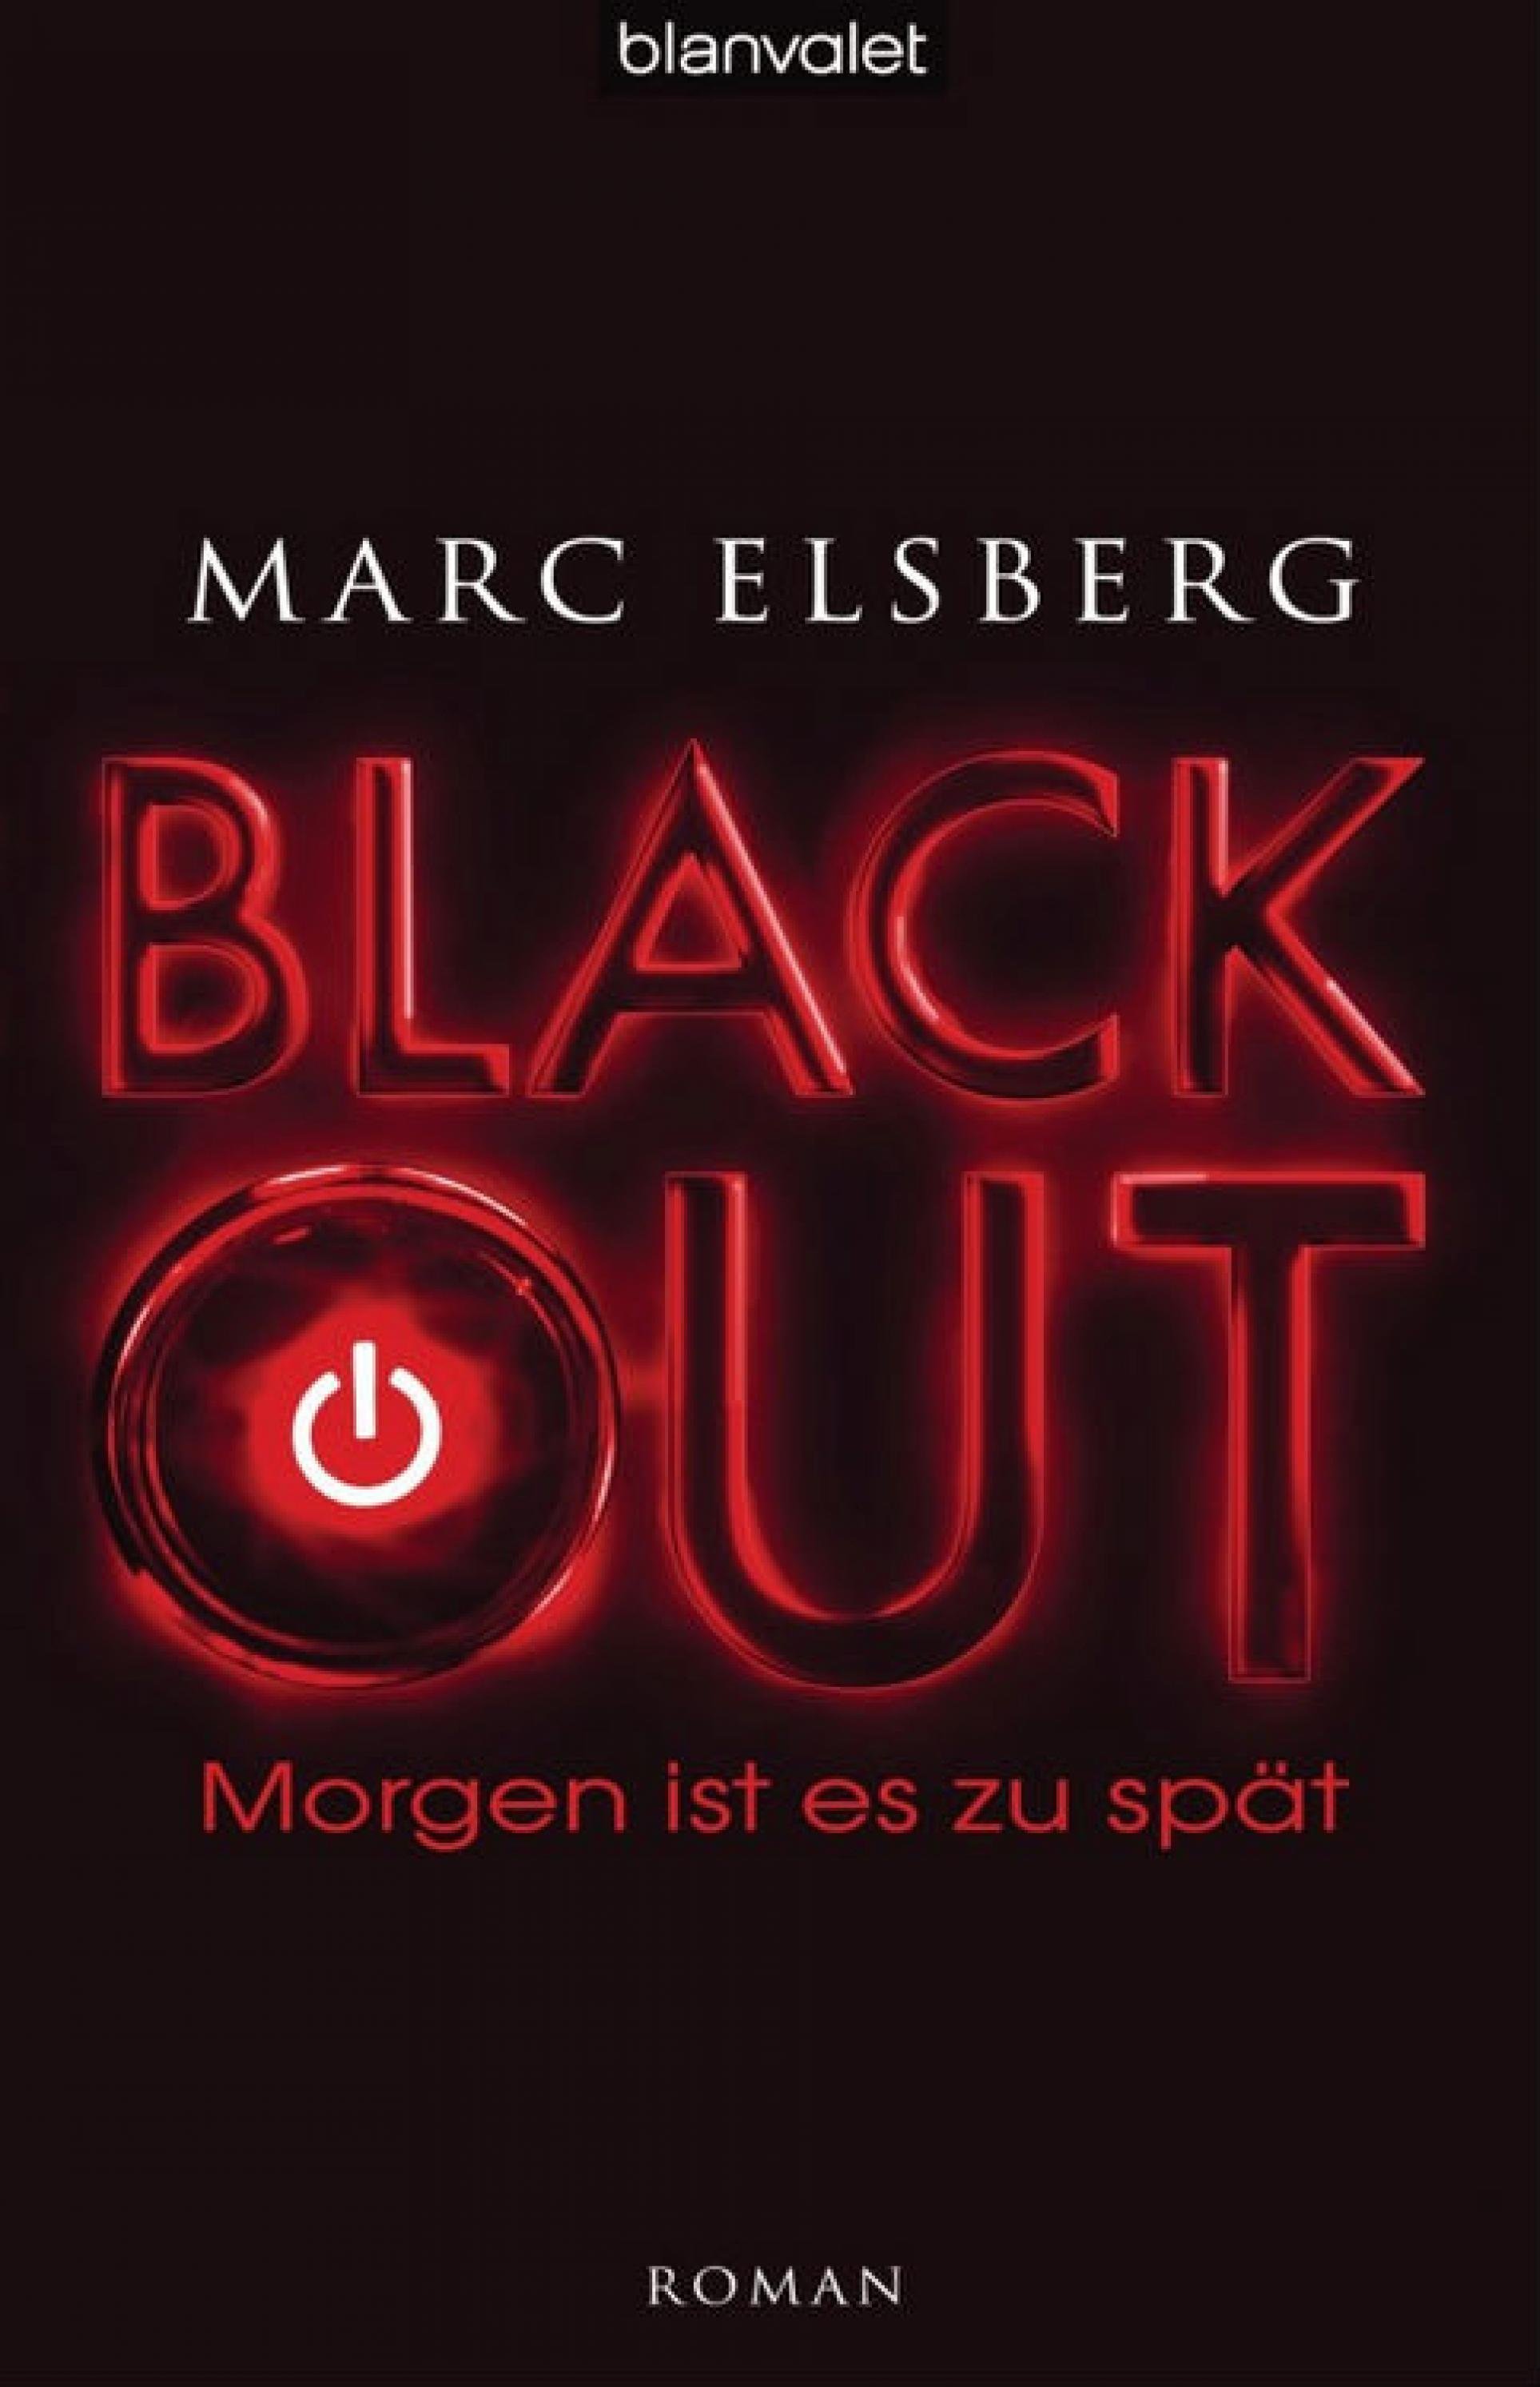 Coverbild von Blackout von Marc Elsberg